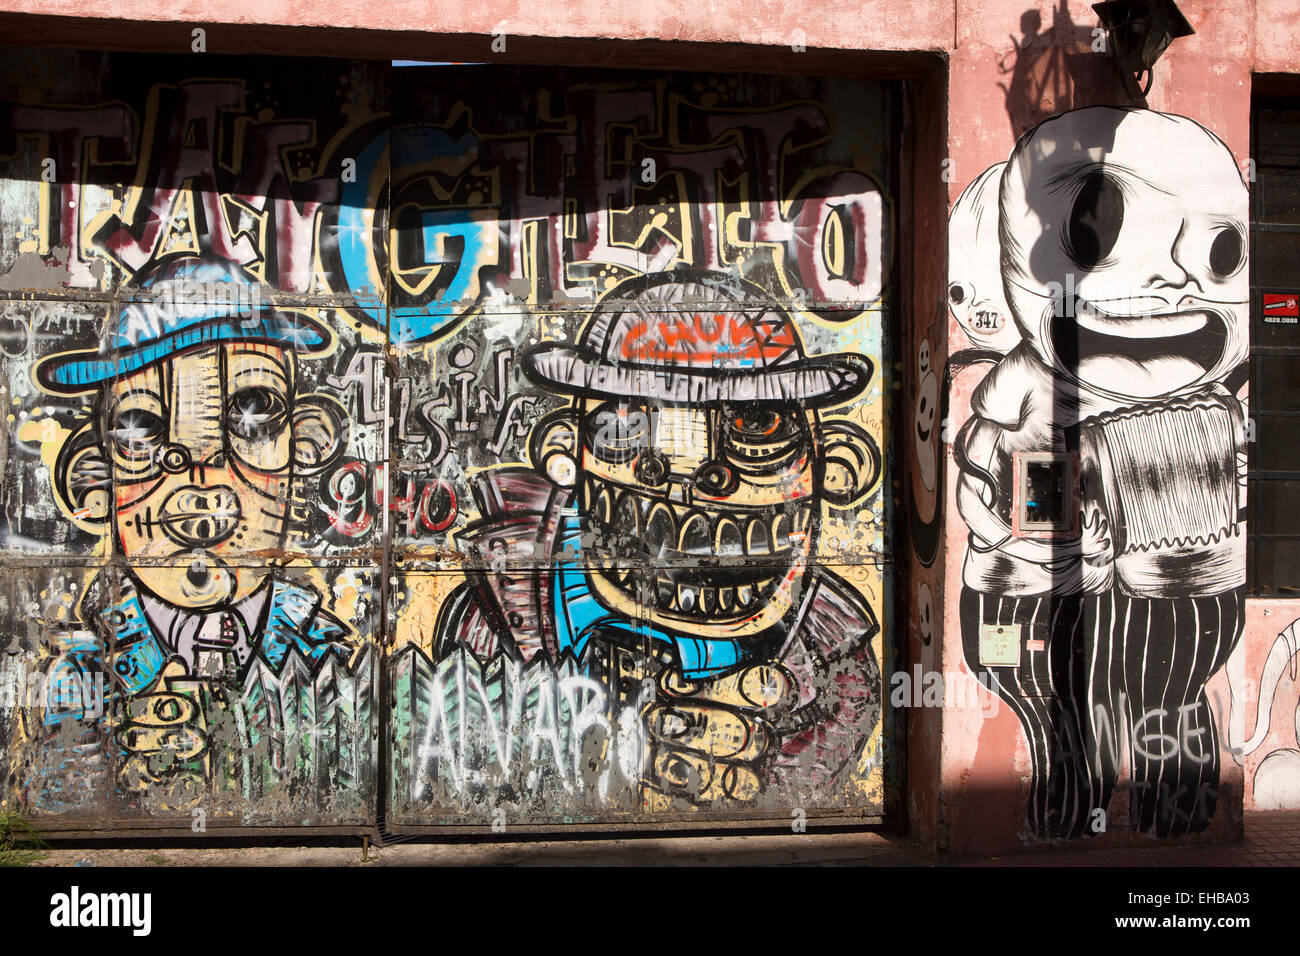 Argentina, Buenos Aires, San Telmo, Defensa, graffiti on gates to house yard Stock Photo